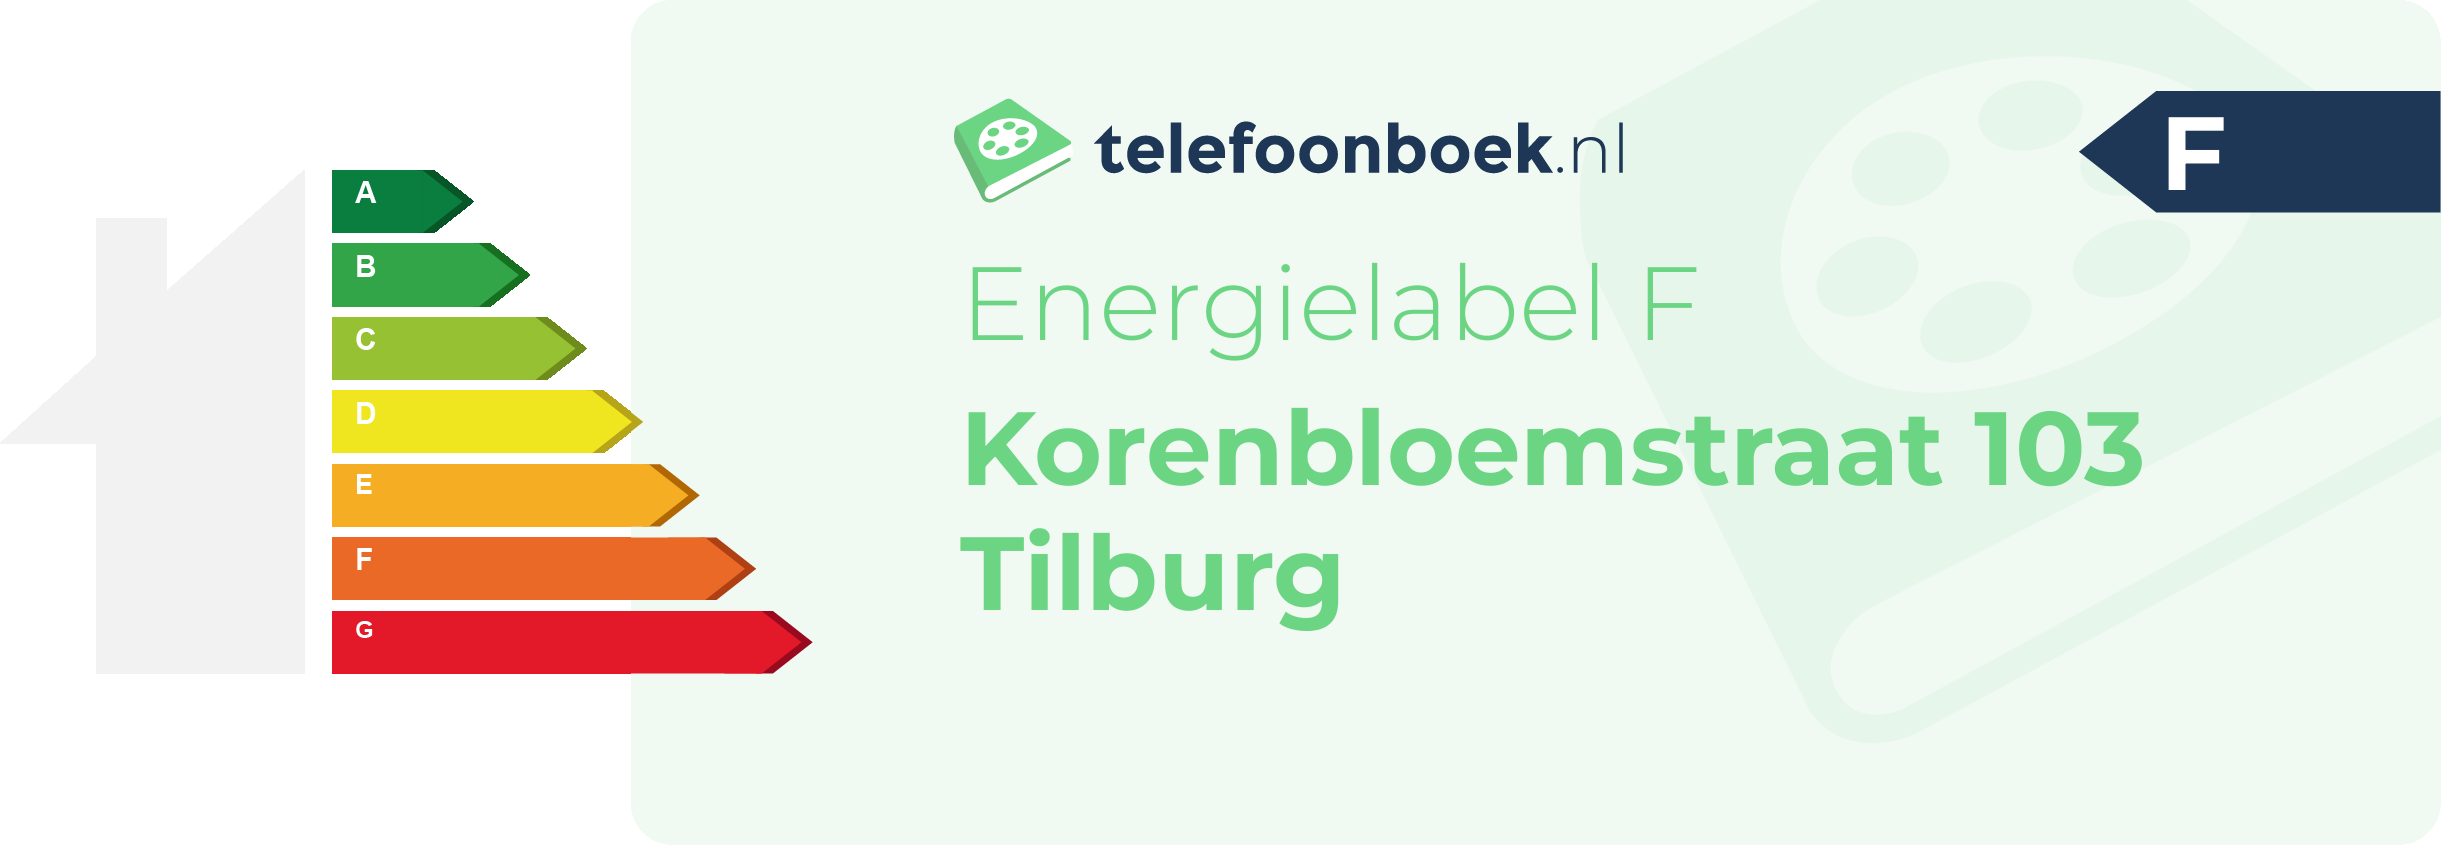 Energielabel Korenbloemstraat 103 Tilburg